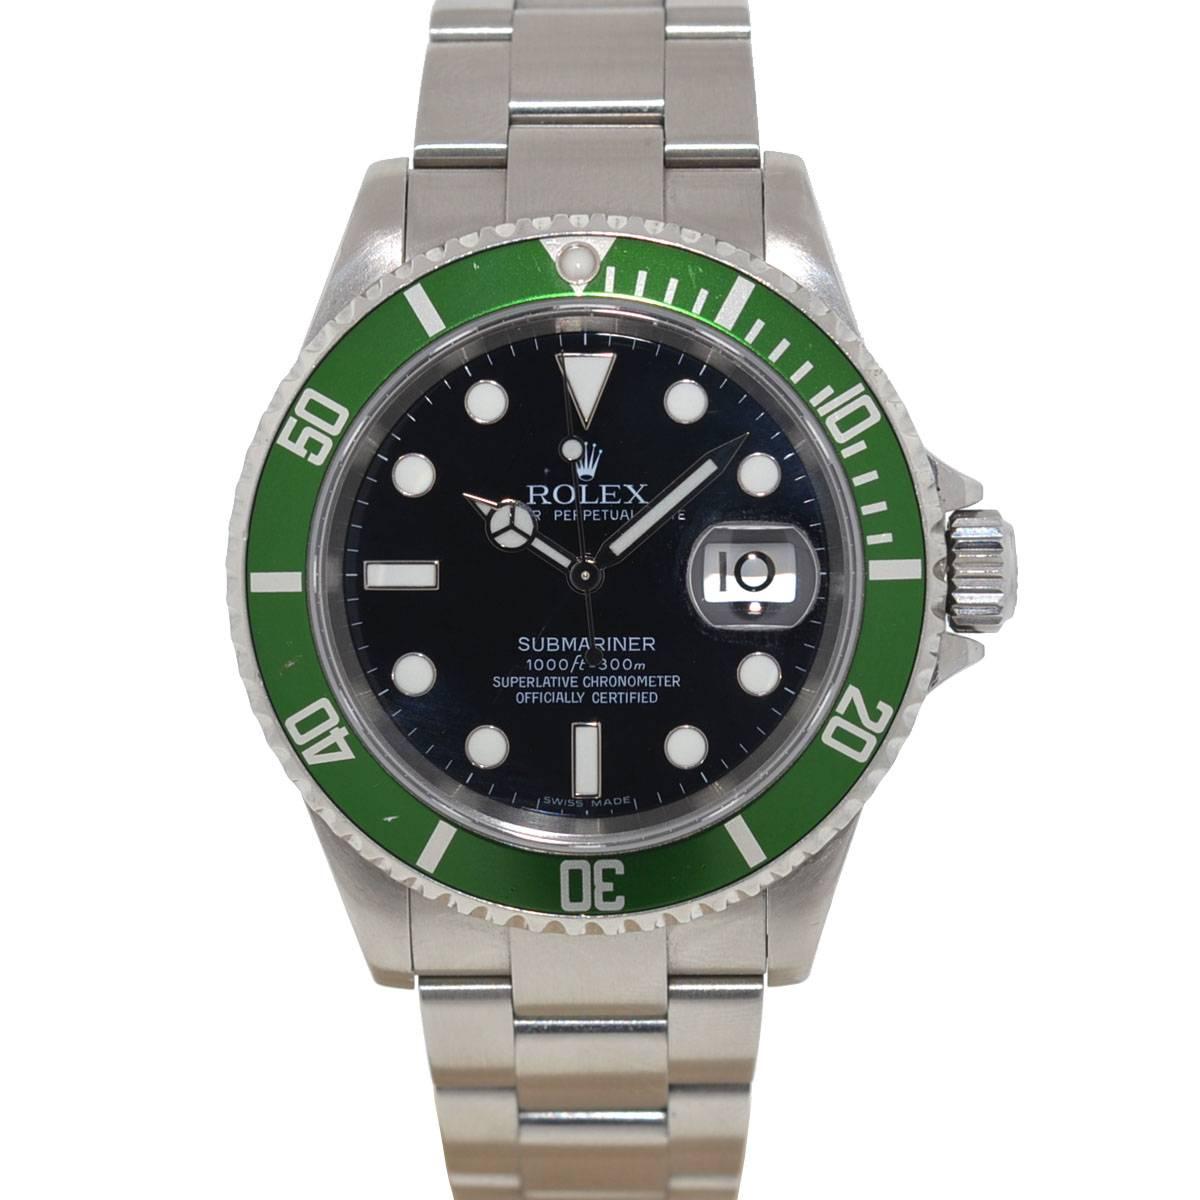 Rolex Stainless Steel Kermit Submariner Automatic Wristwatch Ref 16610LV